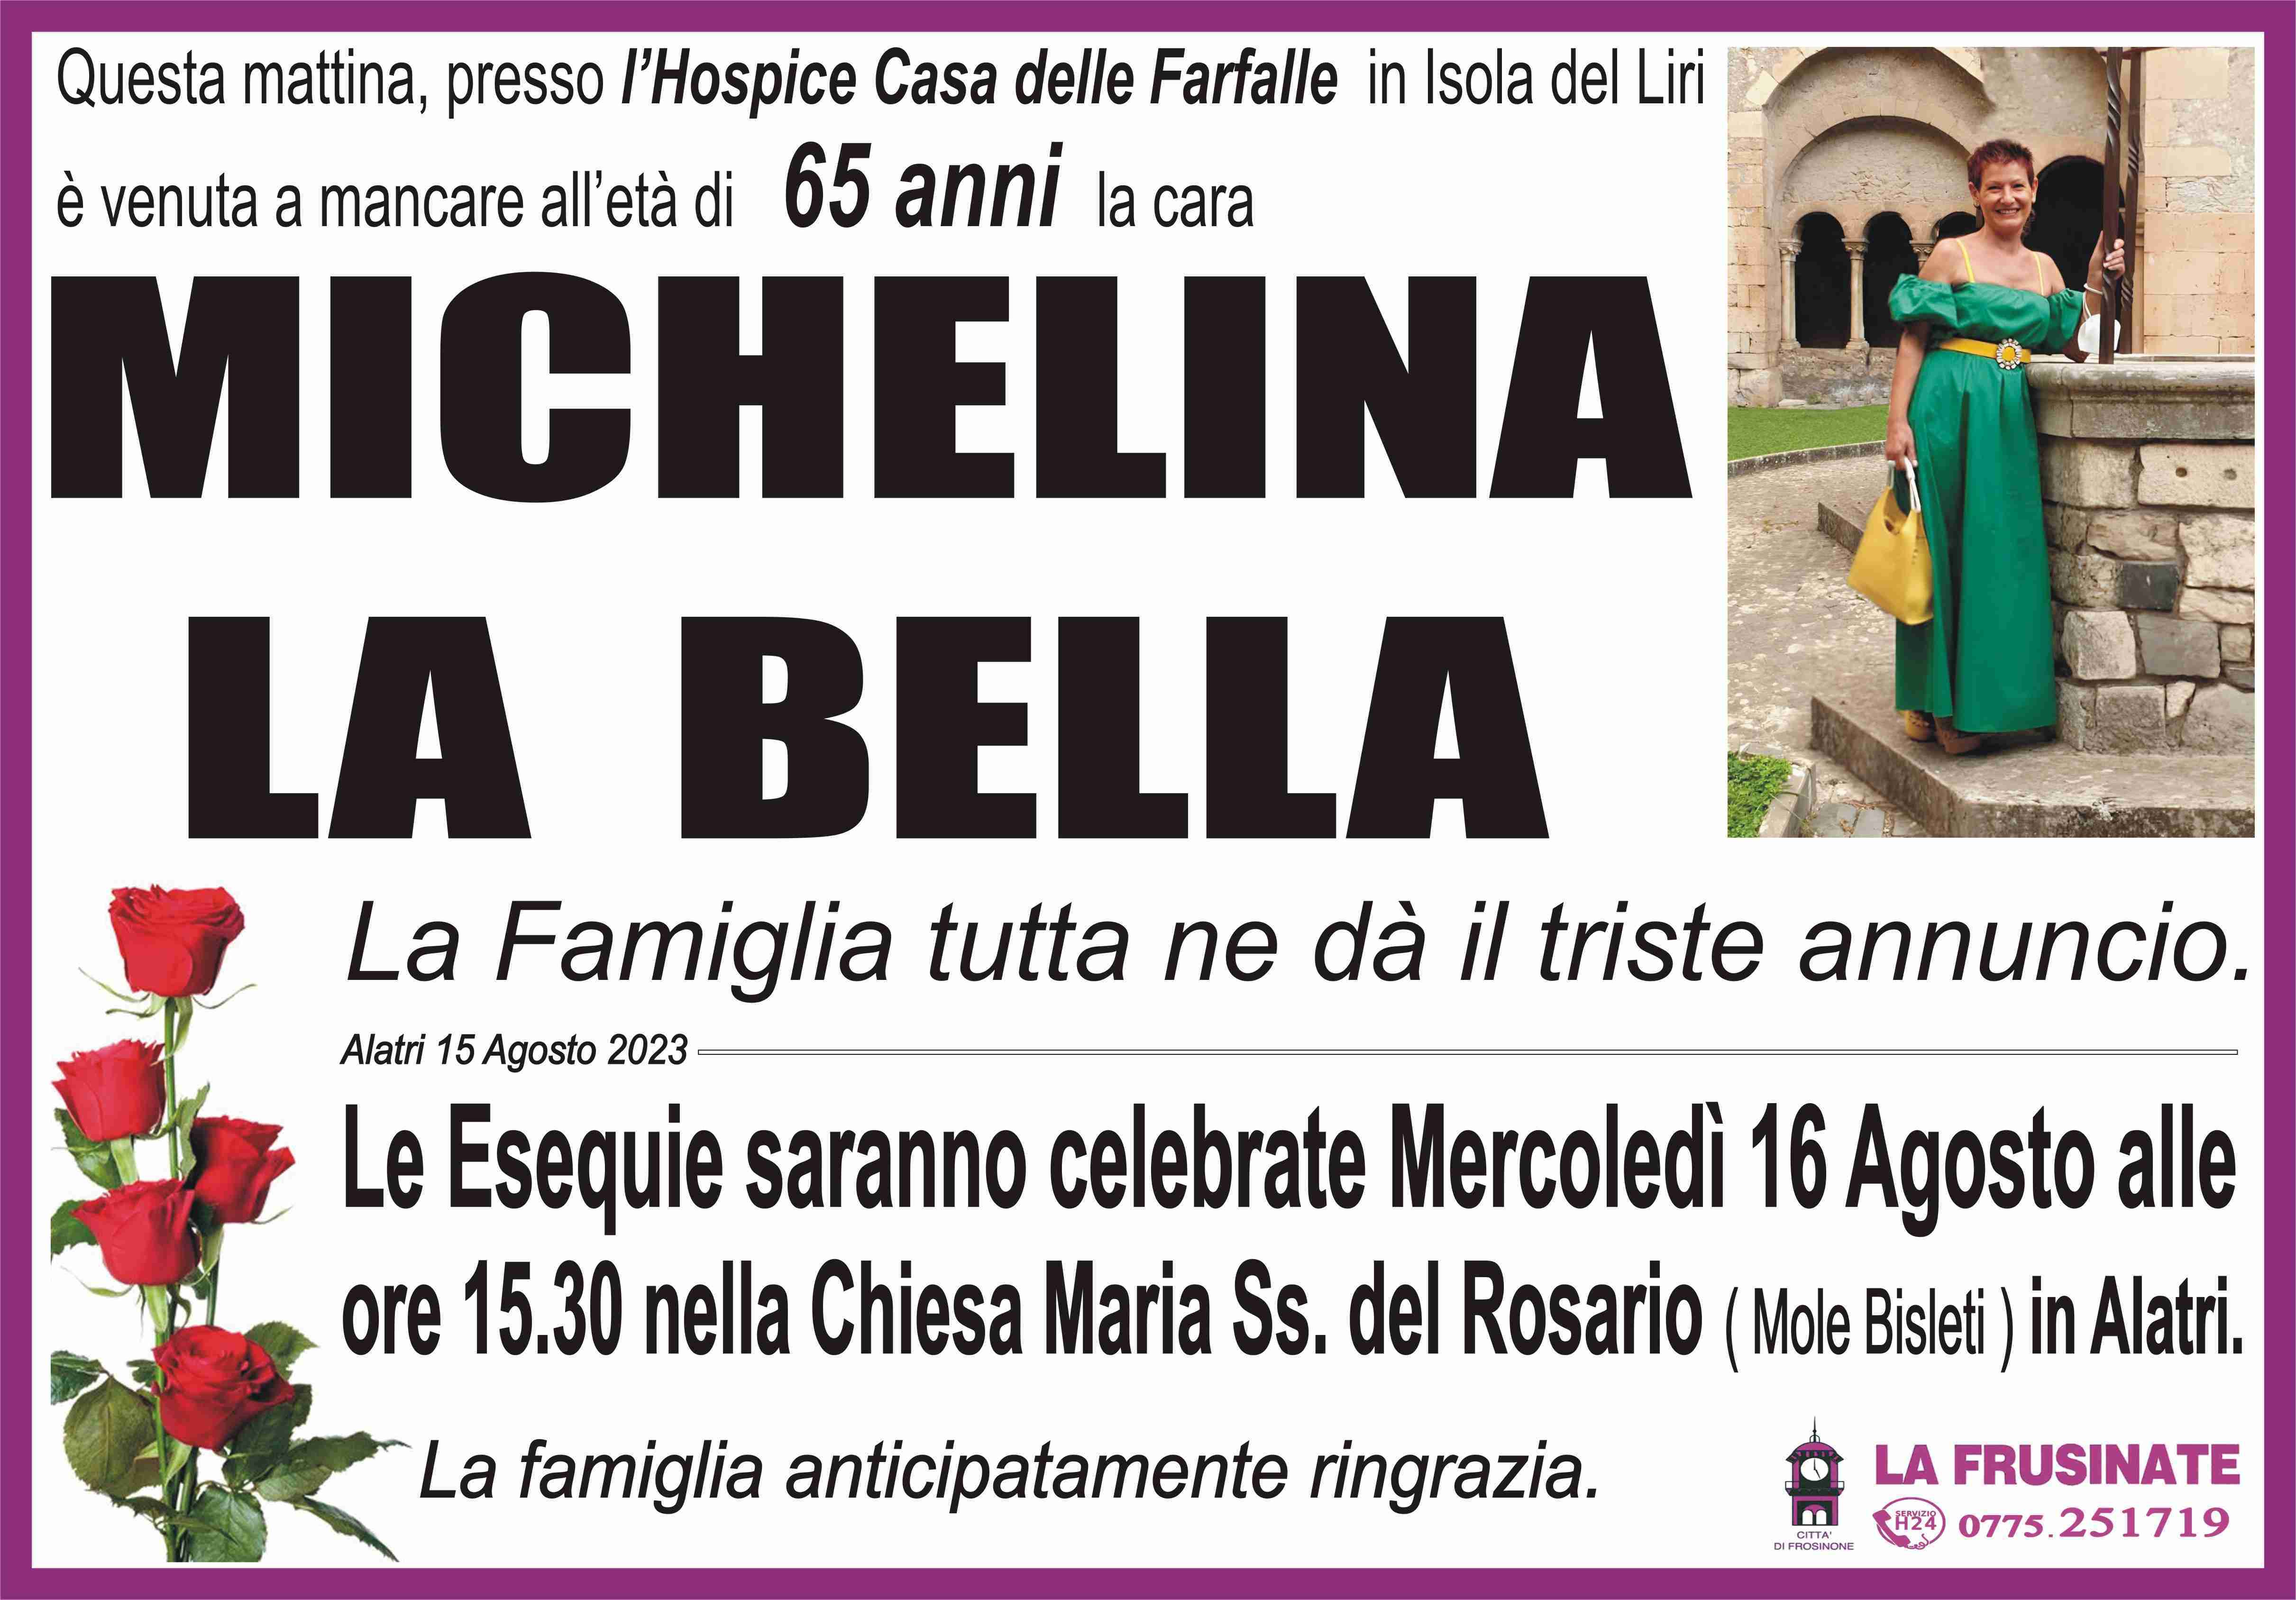 Michelina La Bella